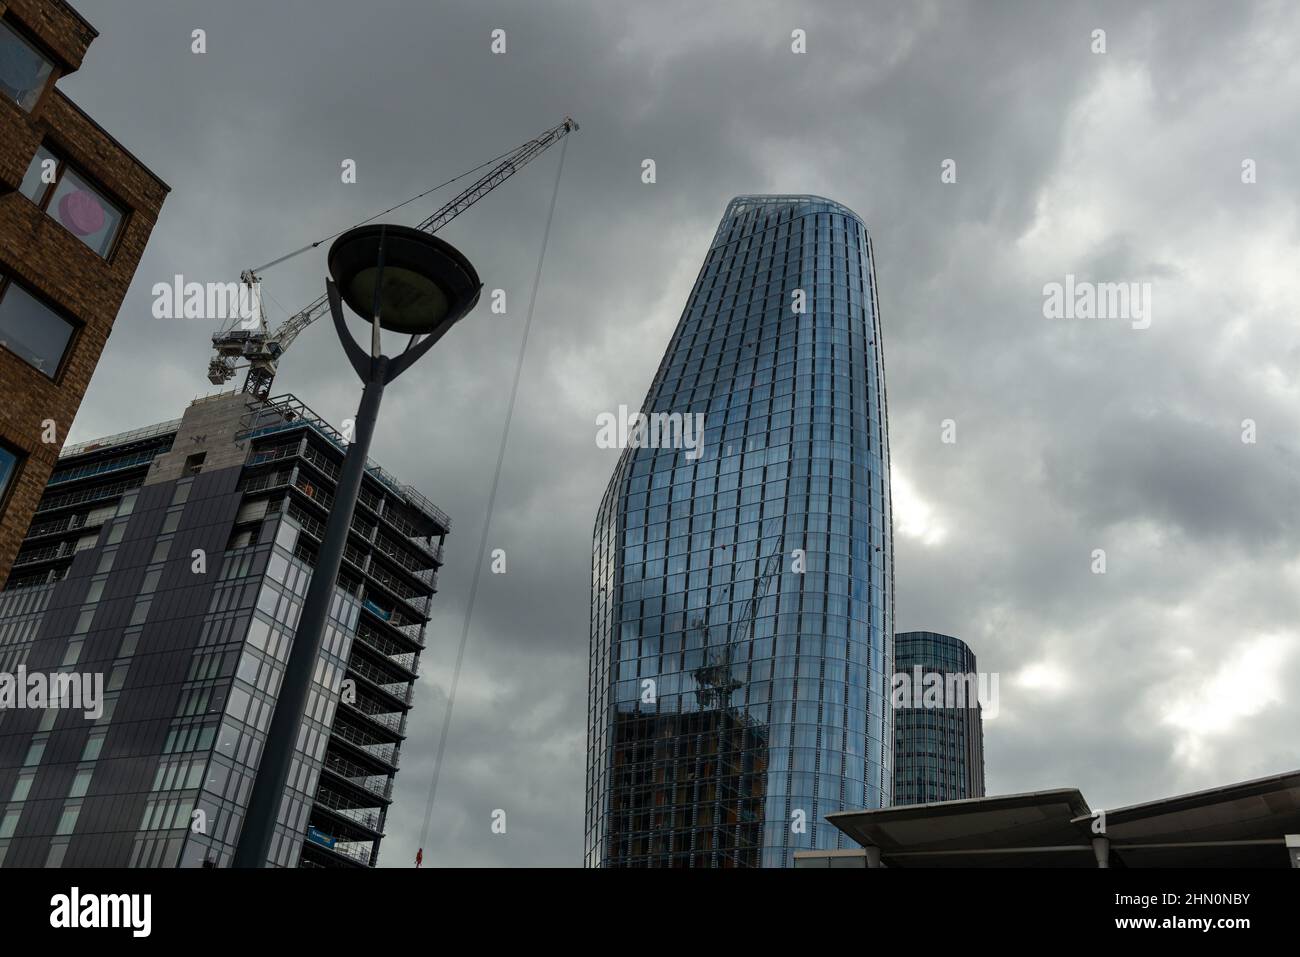 Una grúa de torre y un nuevo edificio en construcción se reflejan en las paredes de cristal de una torre Blackfriars en el centro de Londres Foto de stock